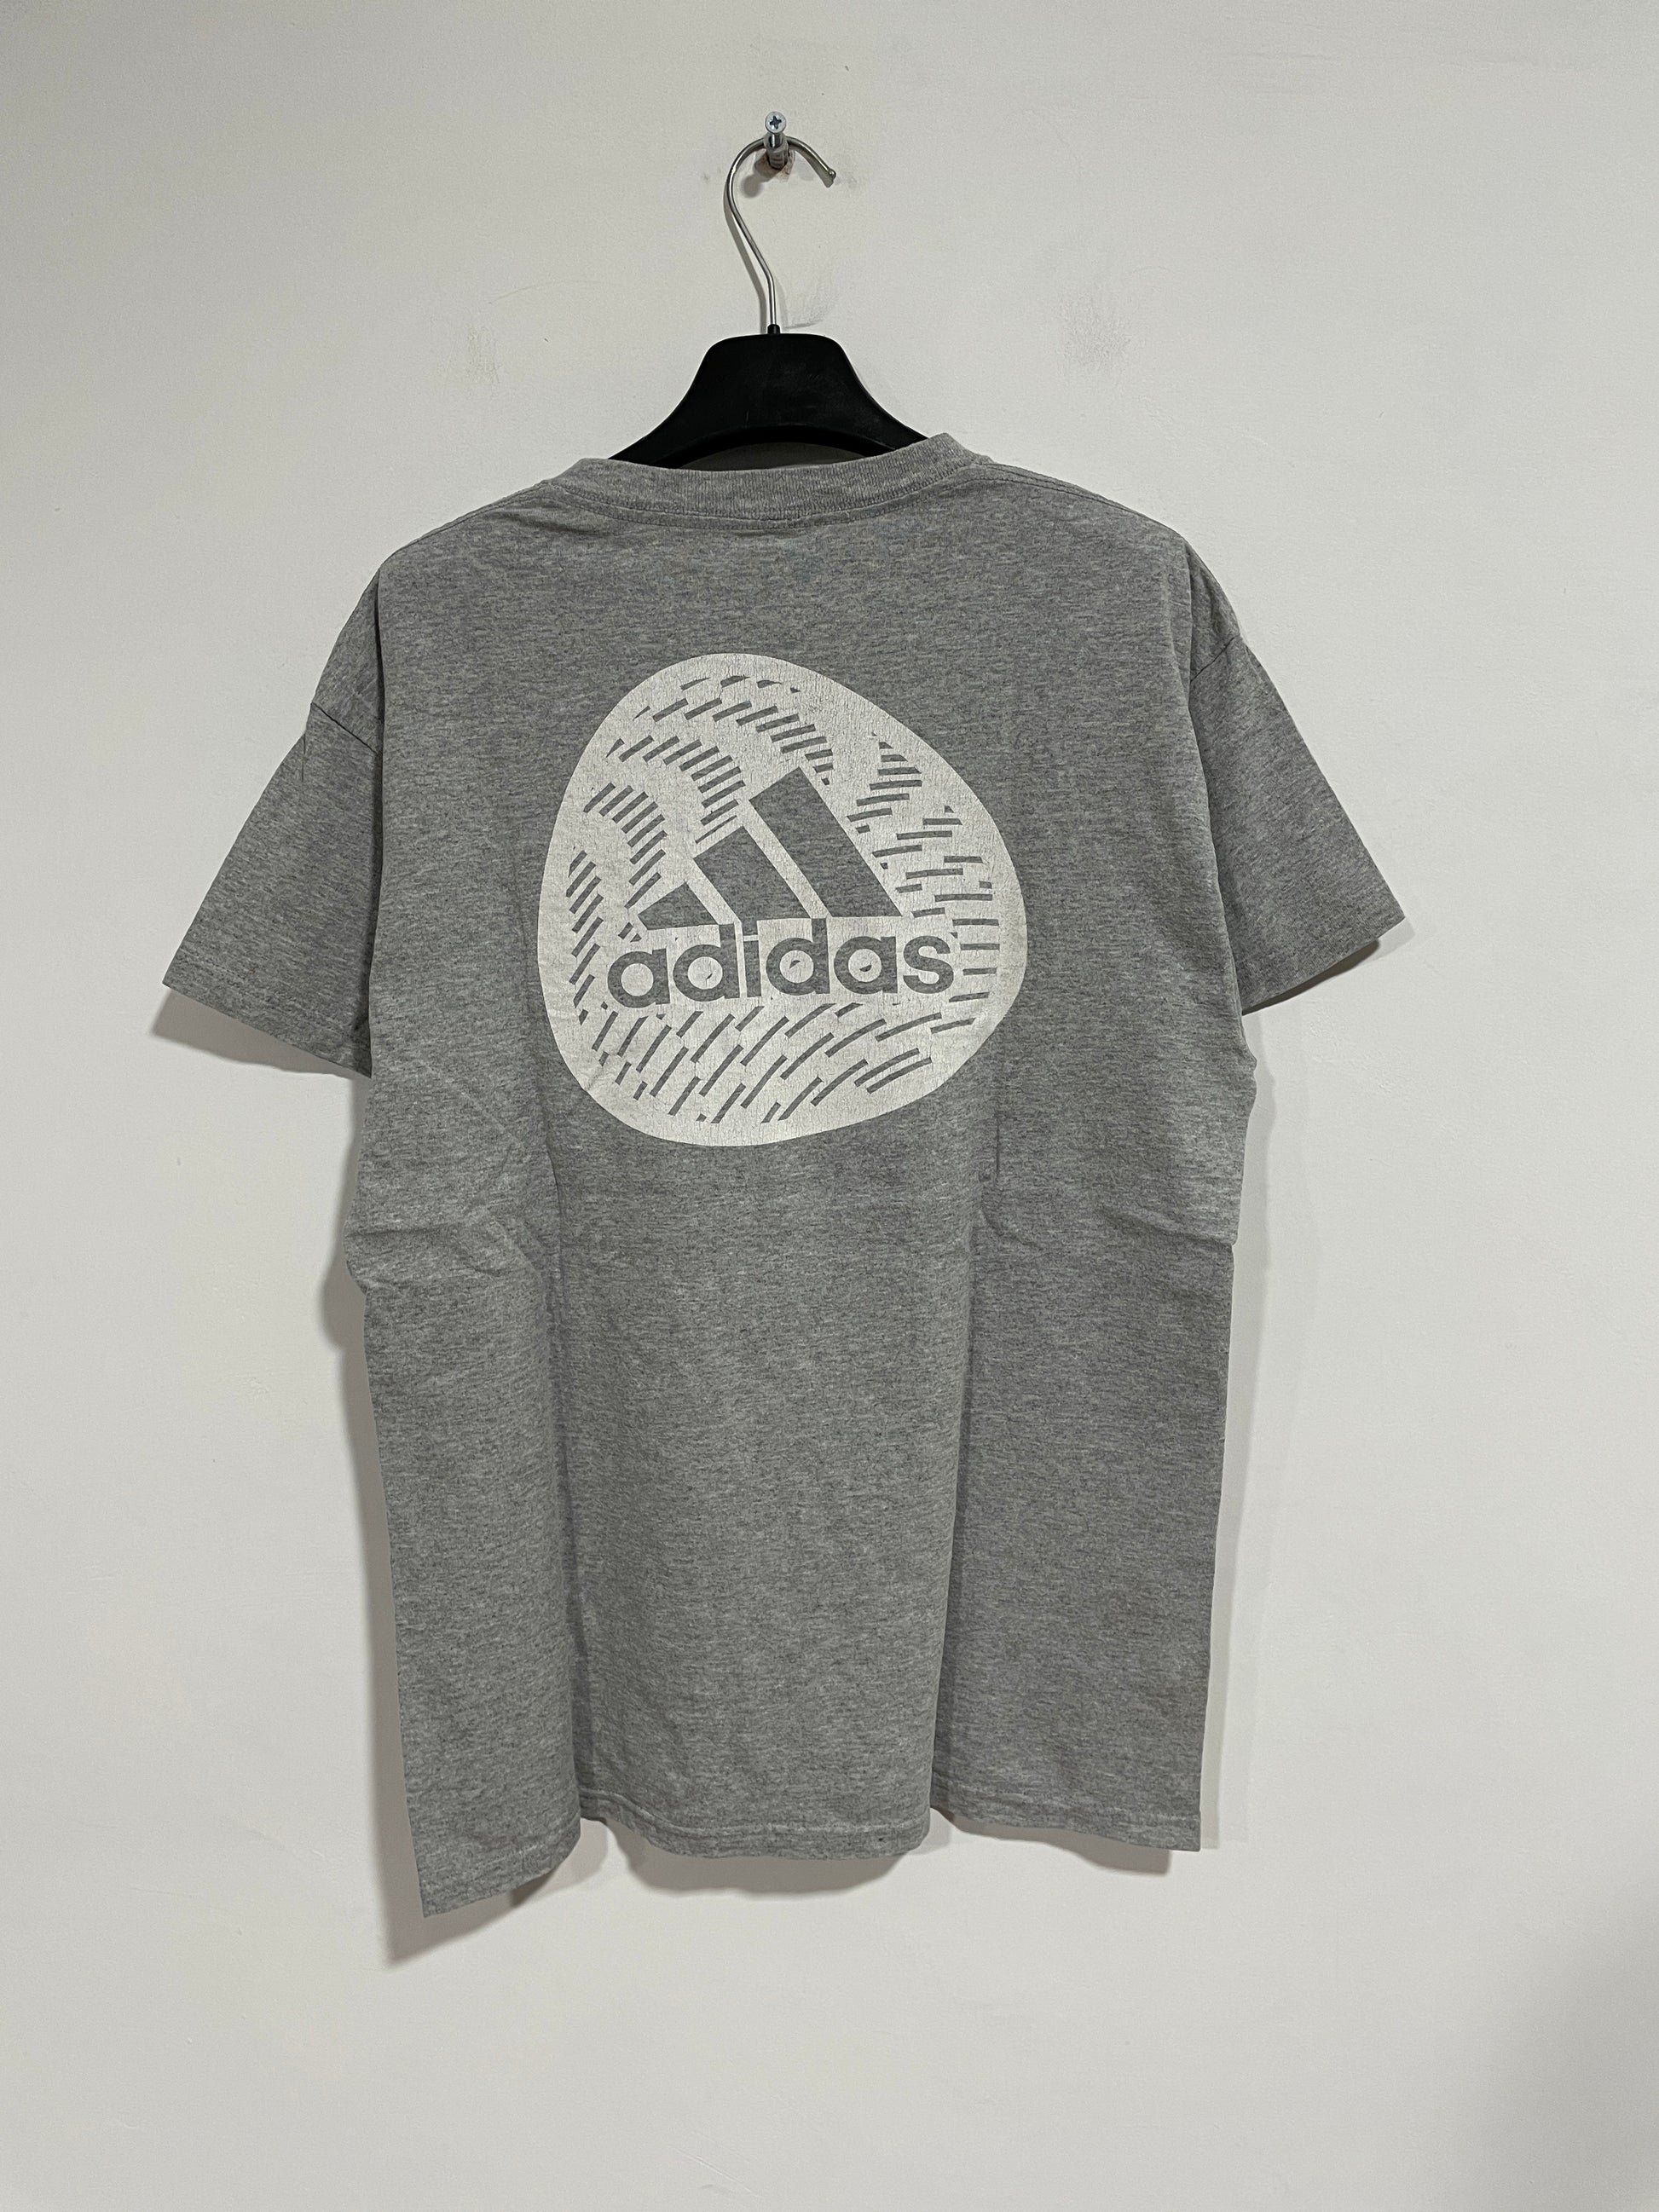 Arrastrarse Prescripción medallista T shirt Adidas vintage (C095) – Vintage Store TV